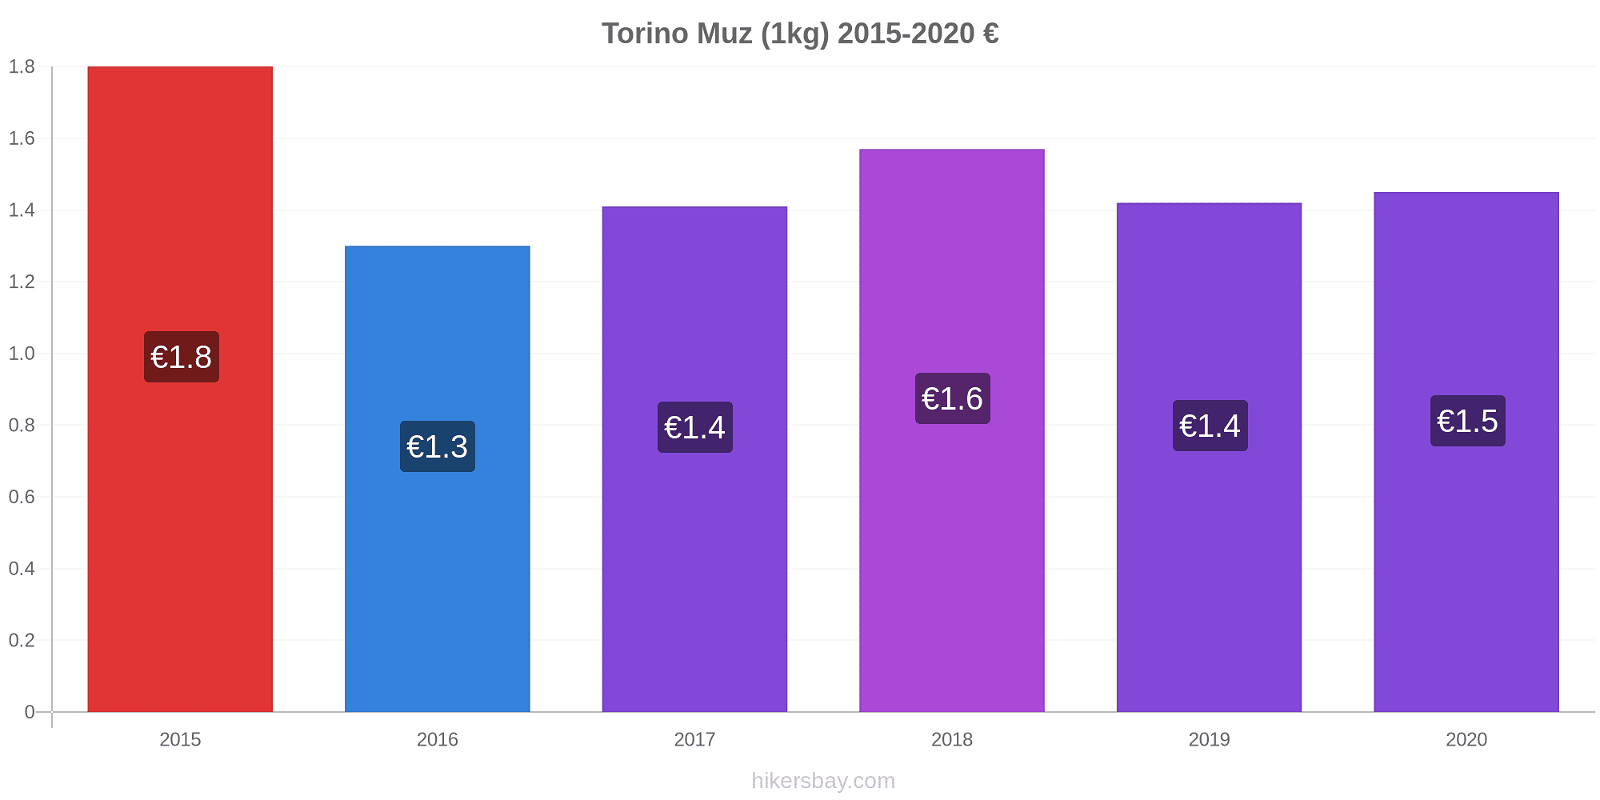 Torino fiyat değişiklikleri Muz (1kg) hikersbay.com